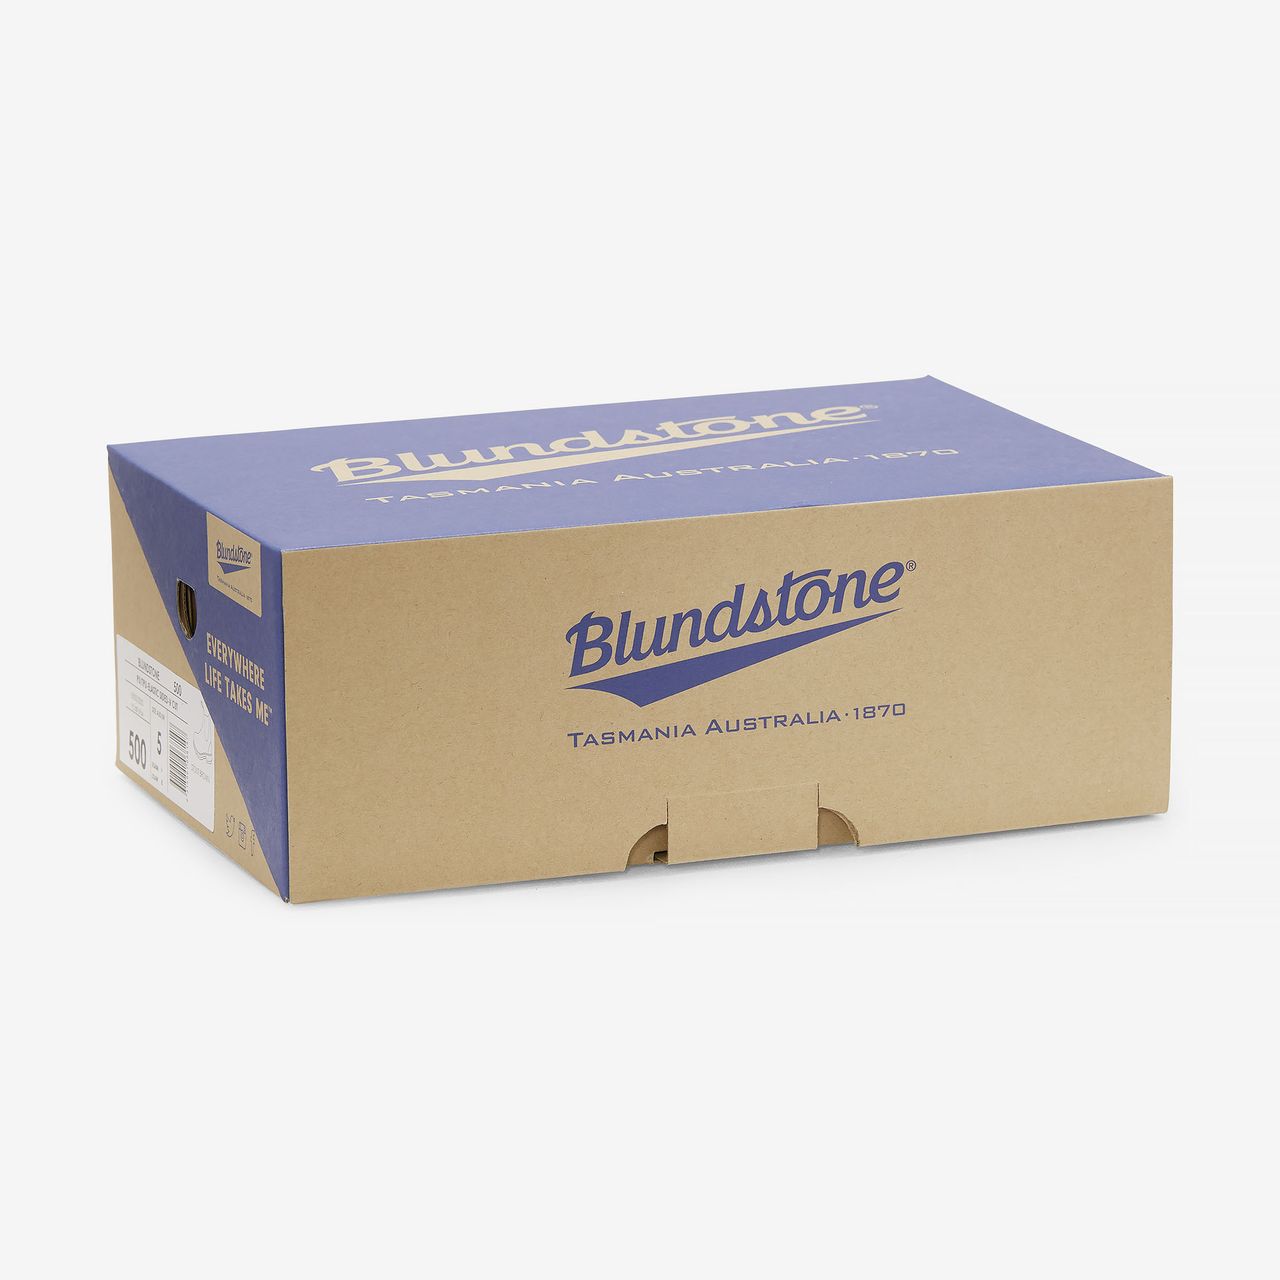 Blundstone 192, steel toe cap